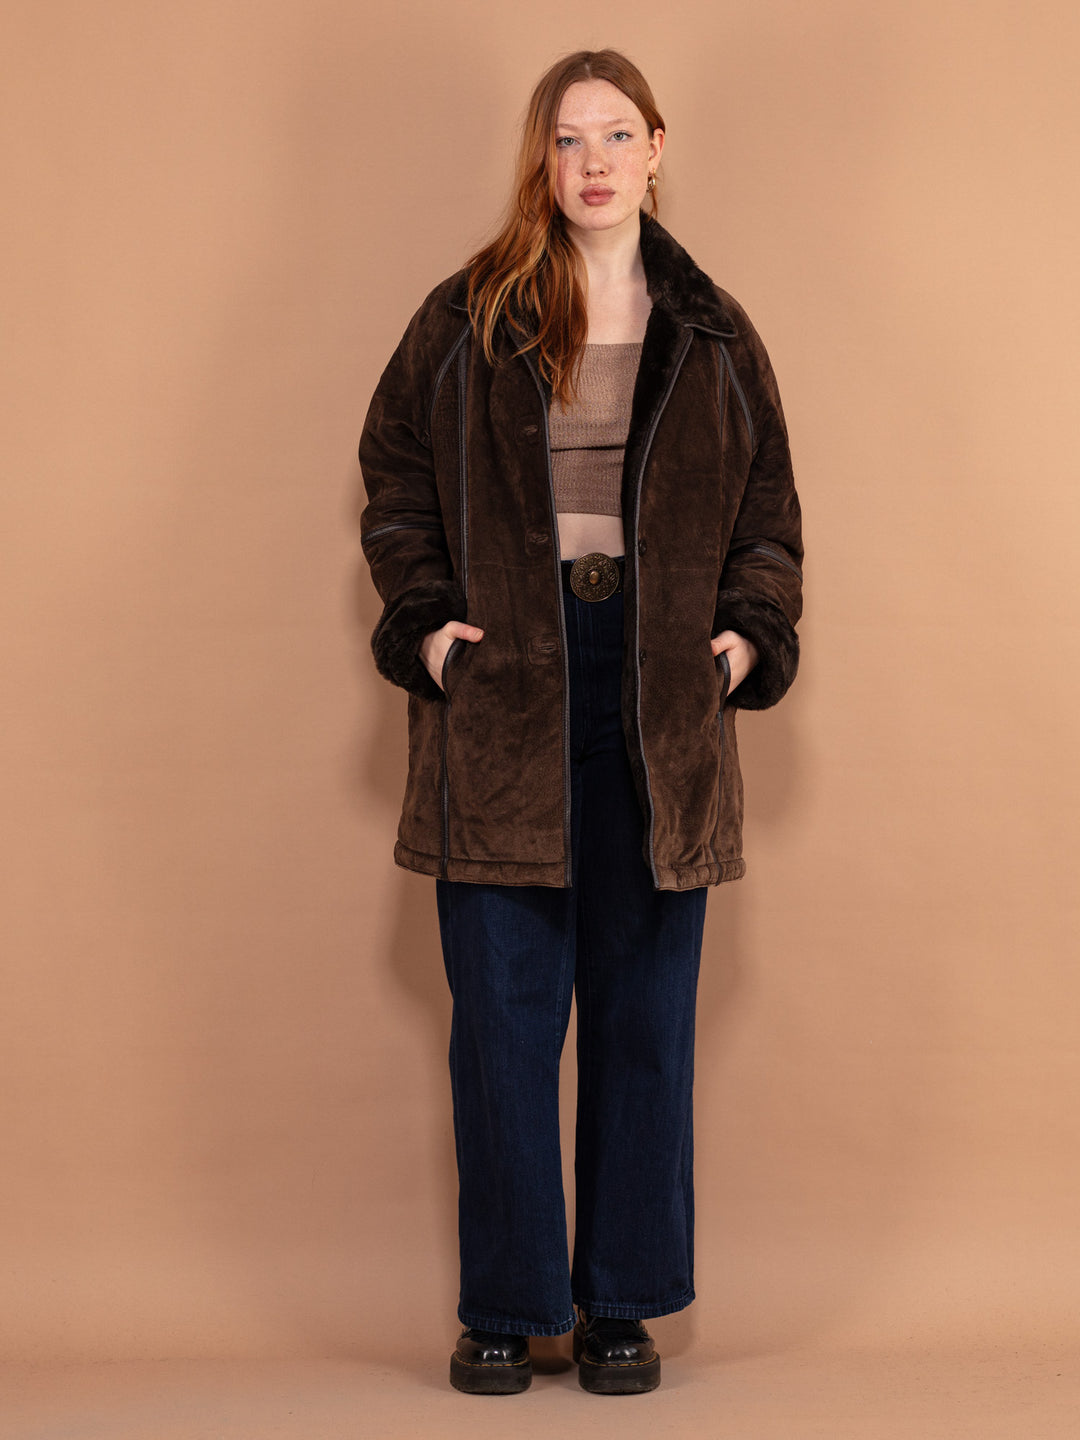 Suede Sherpa Coat 90's, Size XL, Women Sherpa Winter Coat, Vintage Faux Sheepskin Shearling Coat, Brown Suede Overcoat, 90s Outerwear